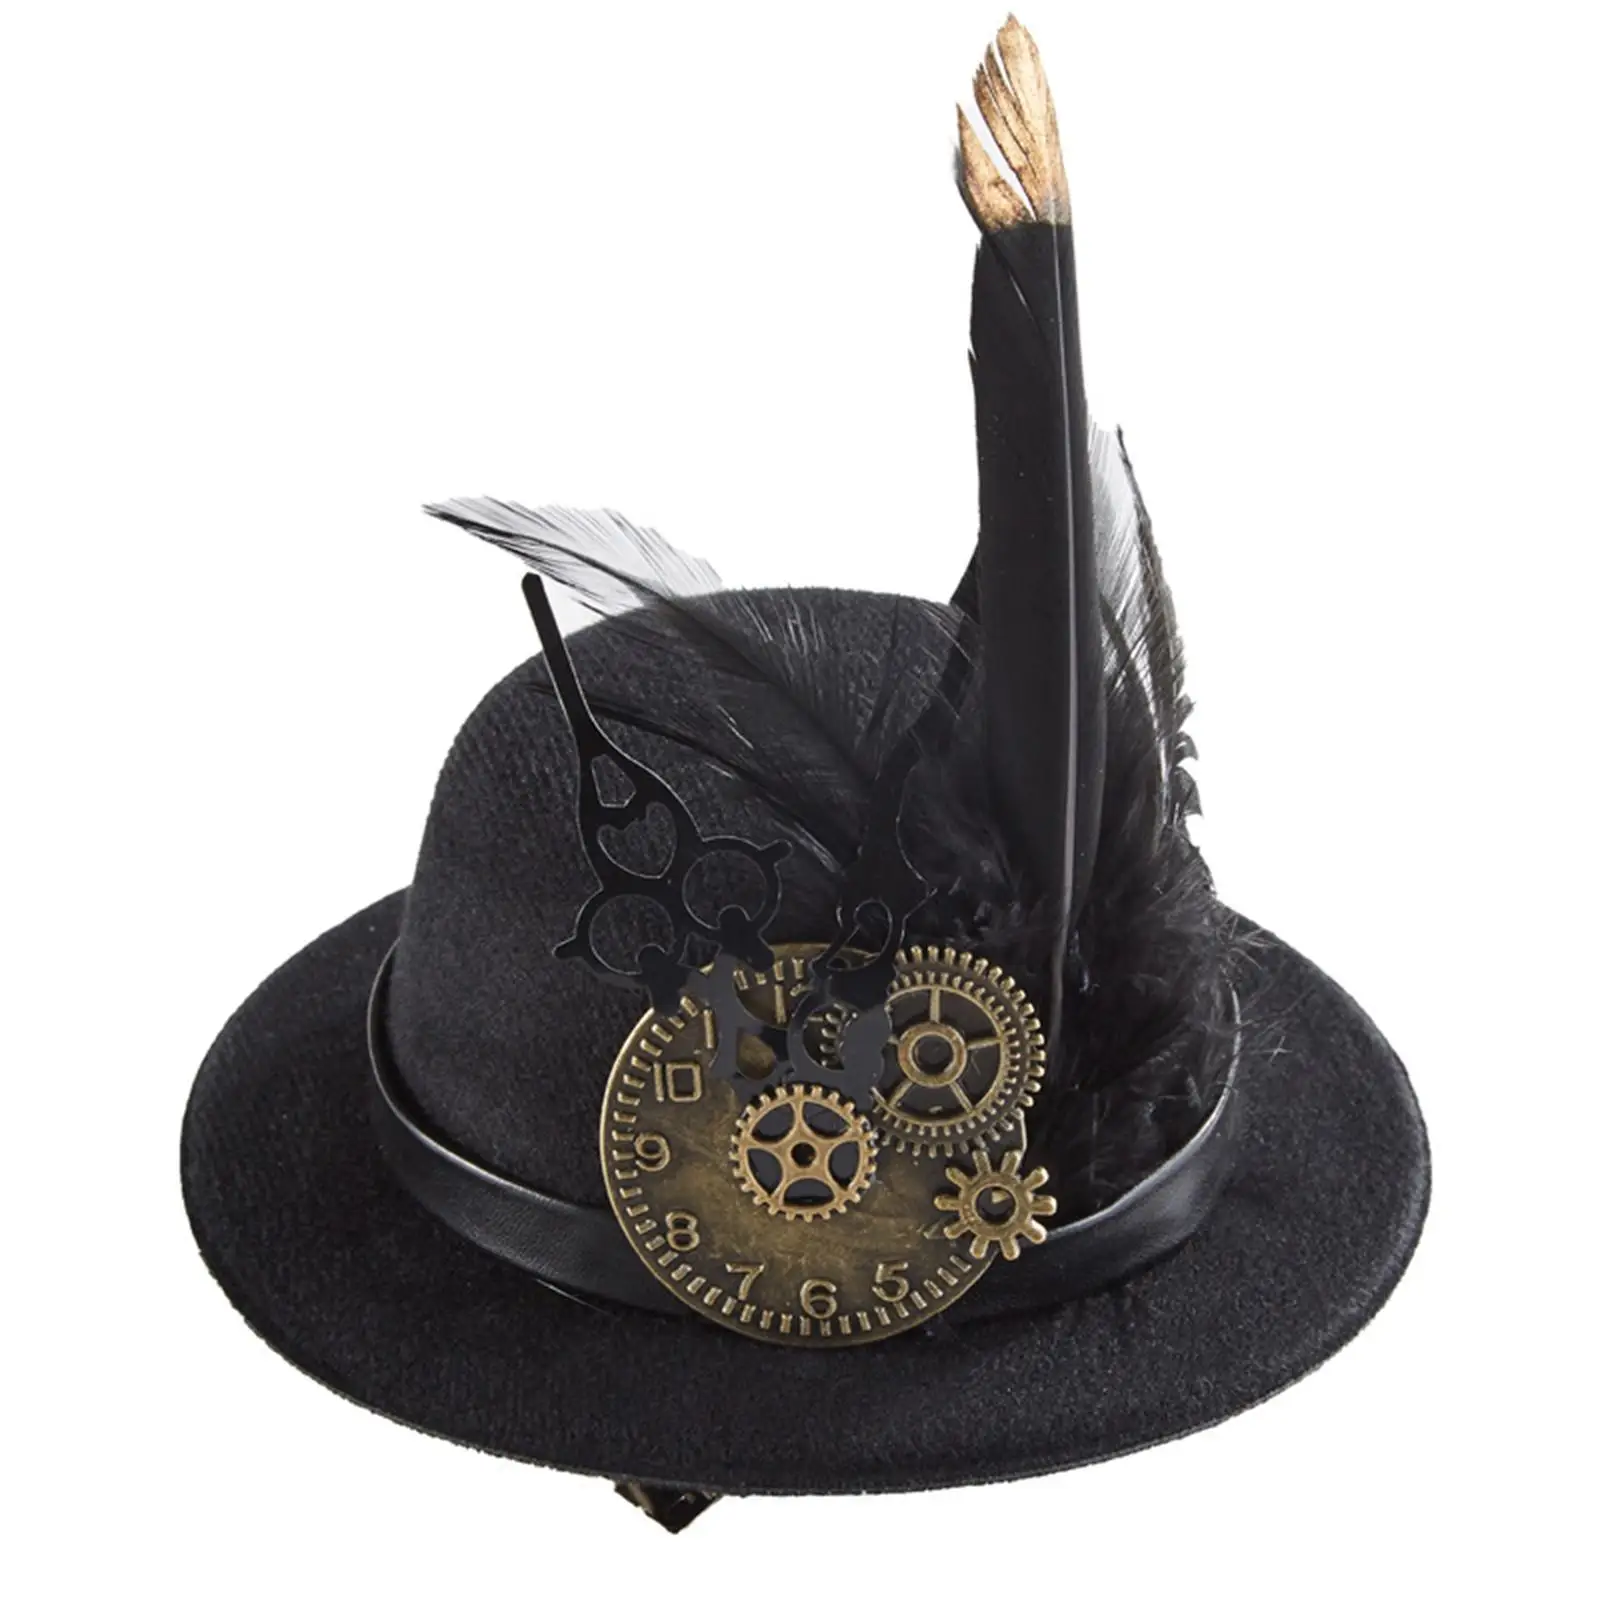 Steampunk Gears Top Hats Dance Hat Gears for Cosplay Gentlemen Fancy Dress Halloween